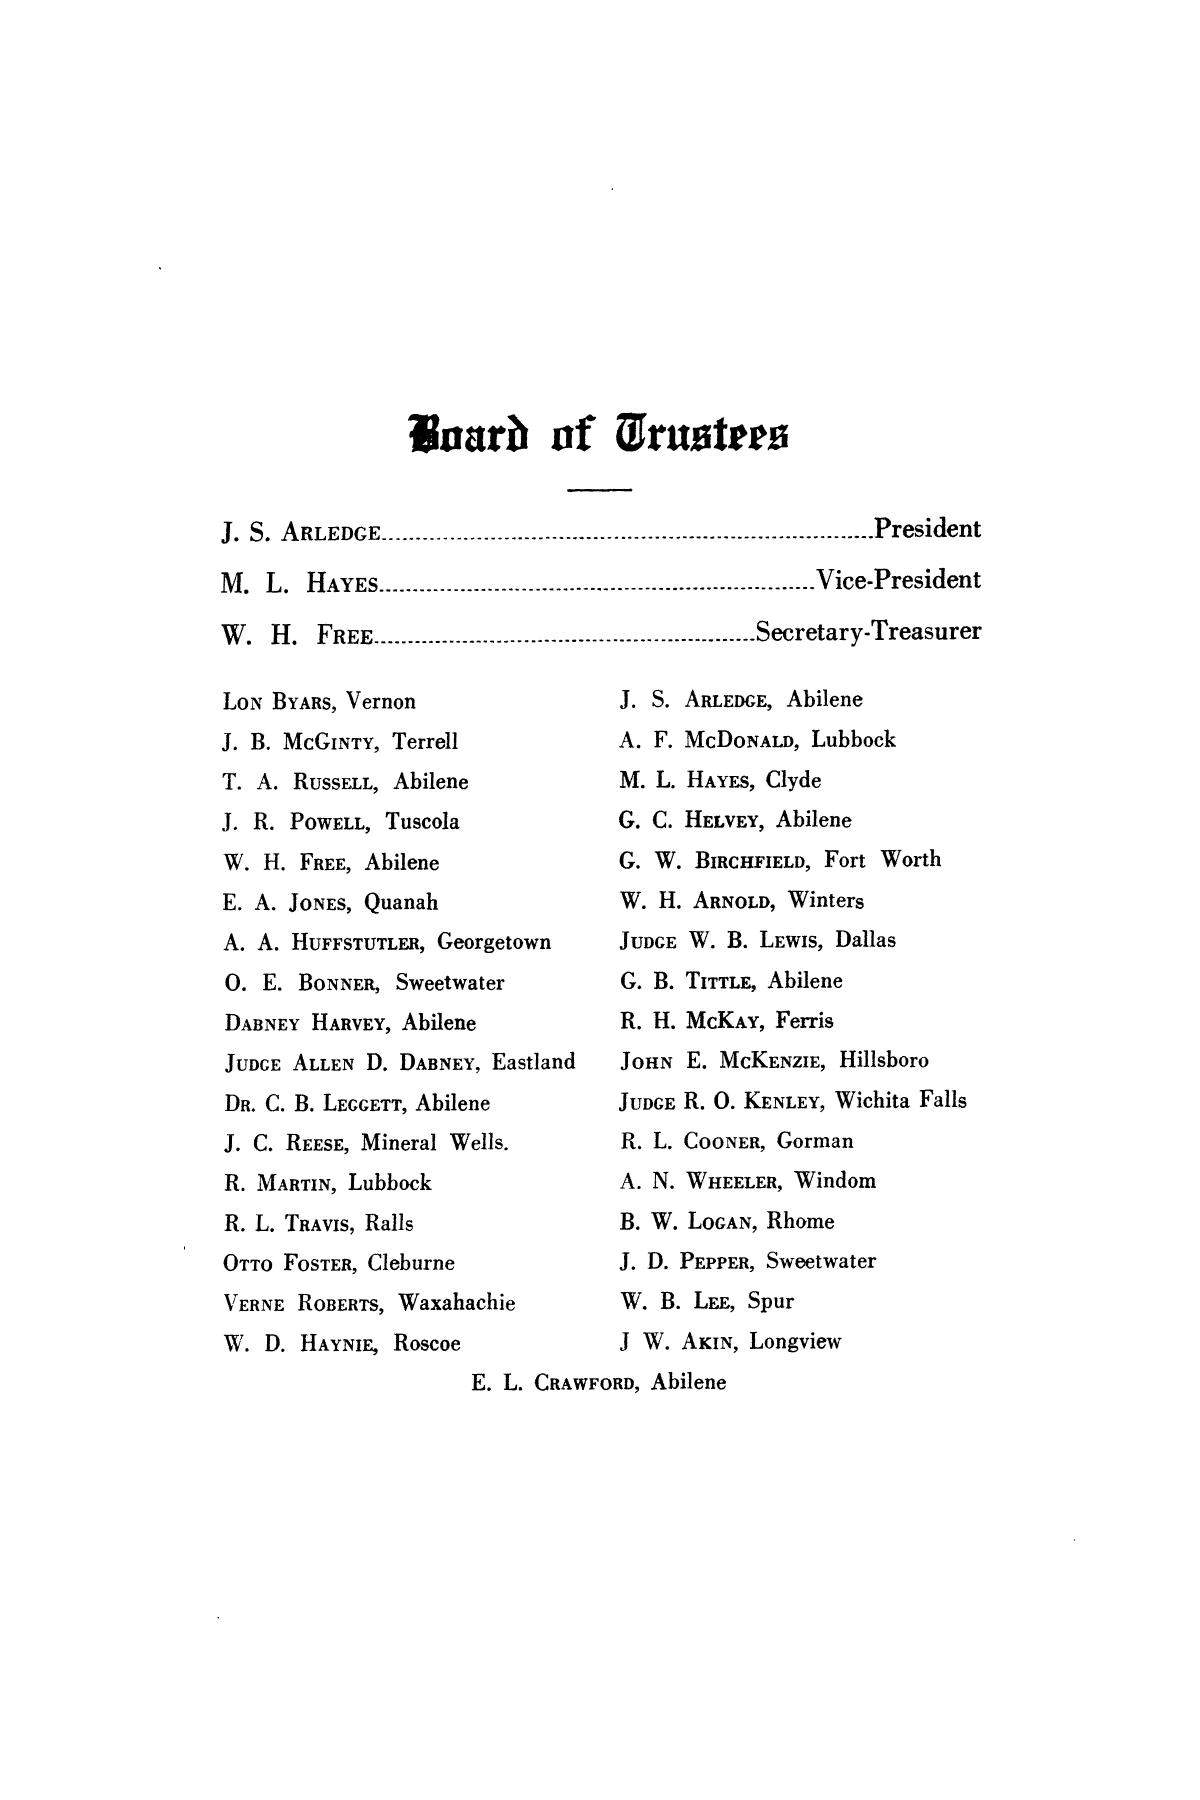 Catalog of Abilene Christian College, 1924-1925
                                                
                                                    5
                                                